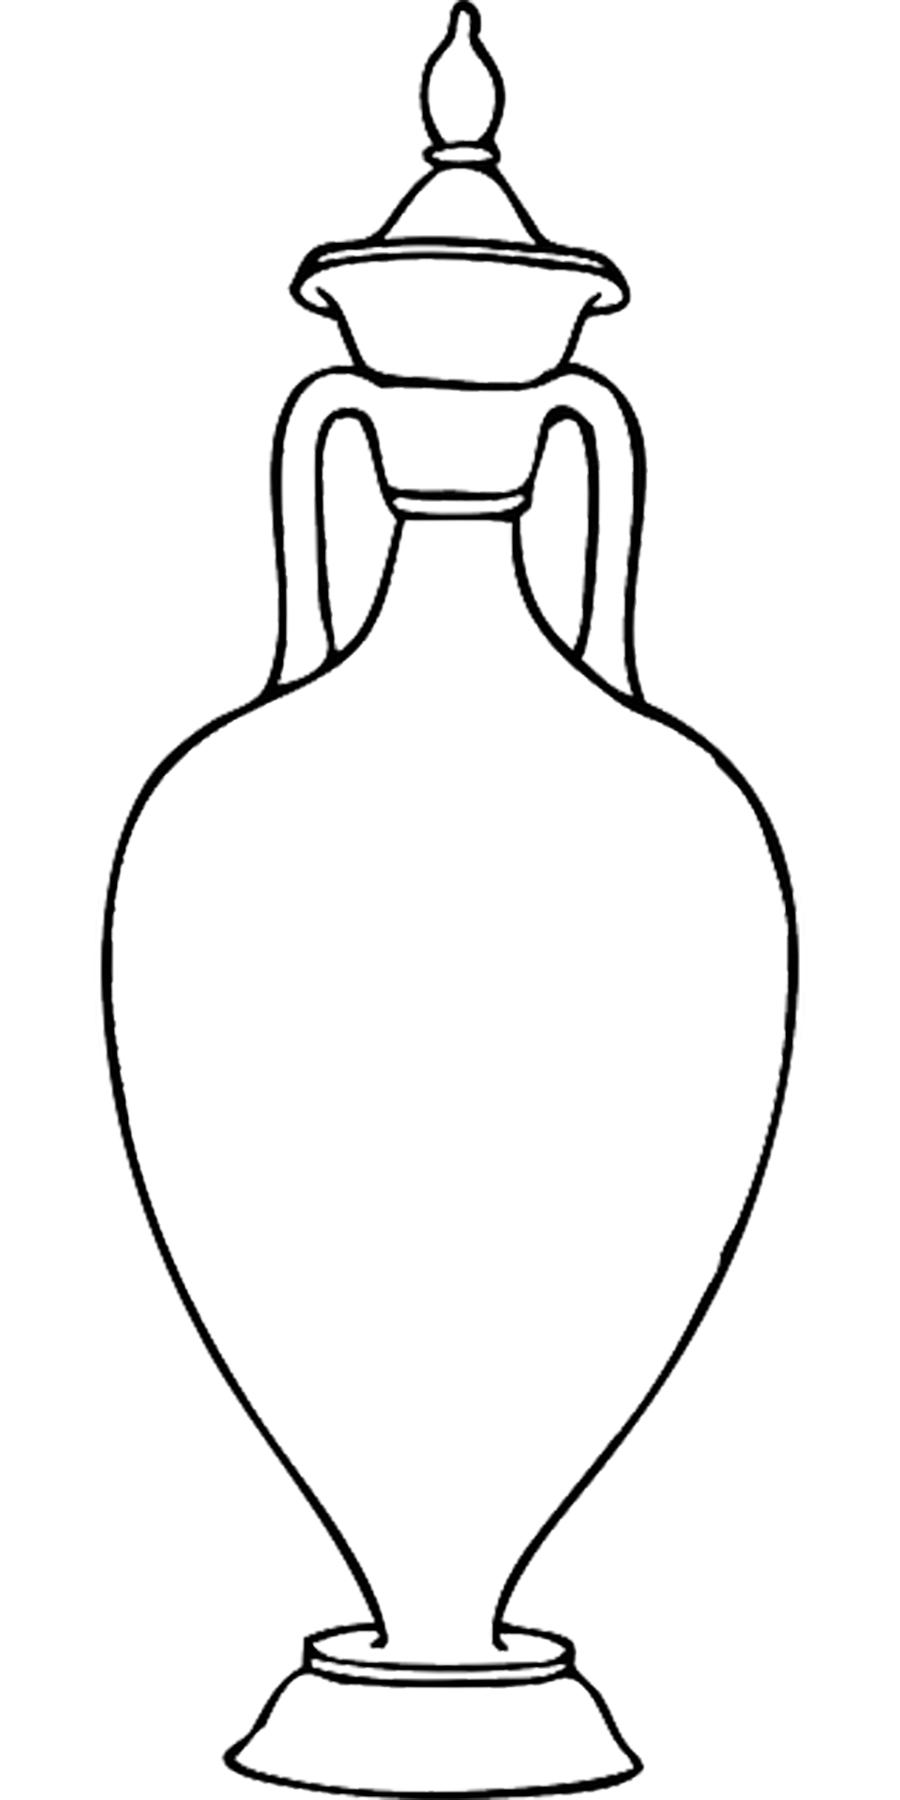 Раскраски шаблон вазы (шаблон, ваза)